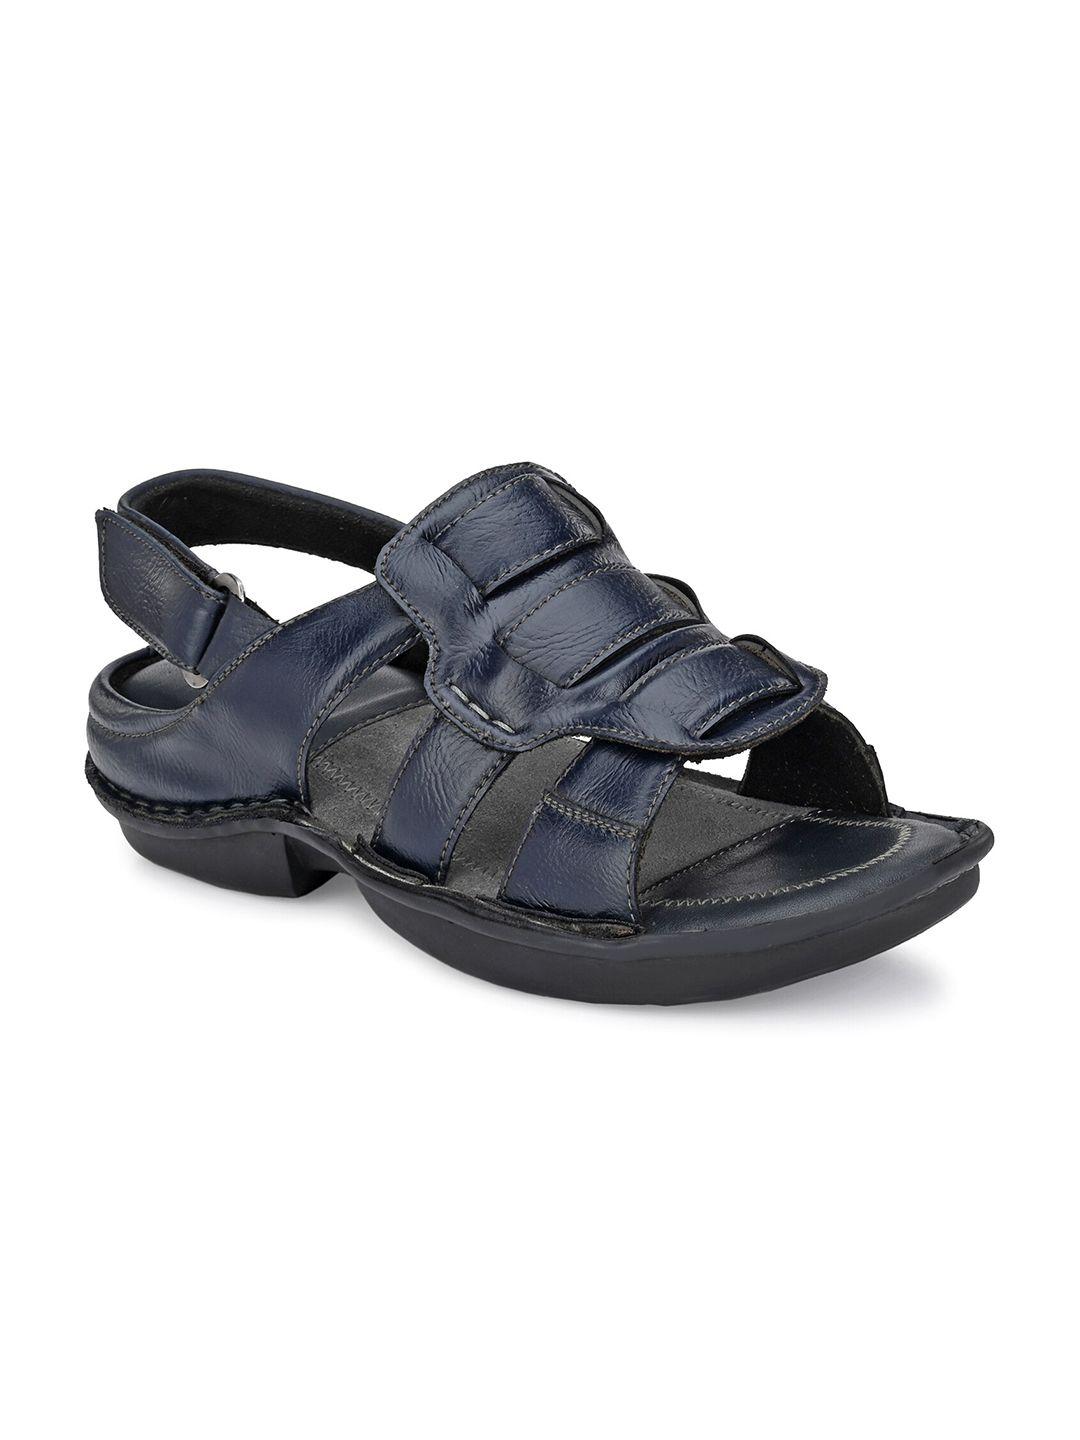 softio-men-blue-comfort-sandals